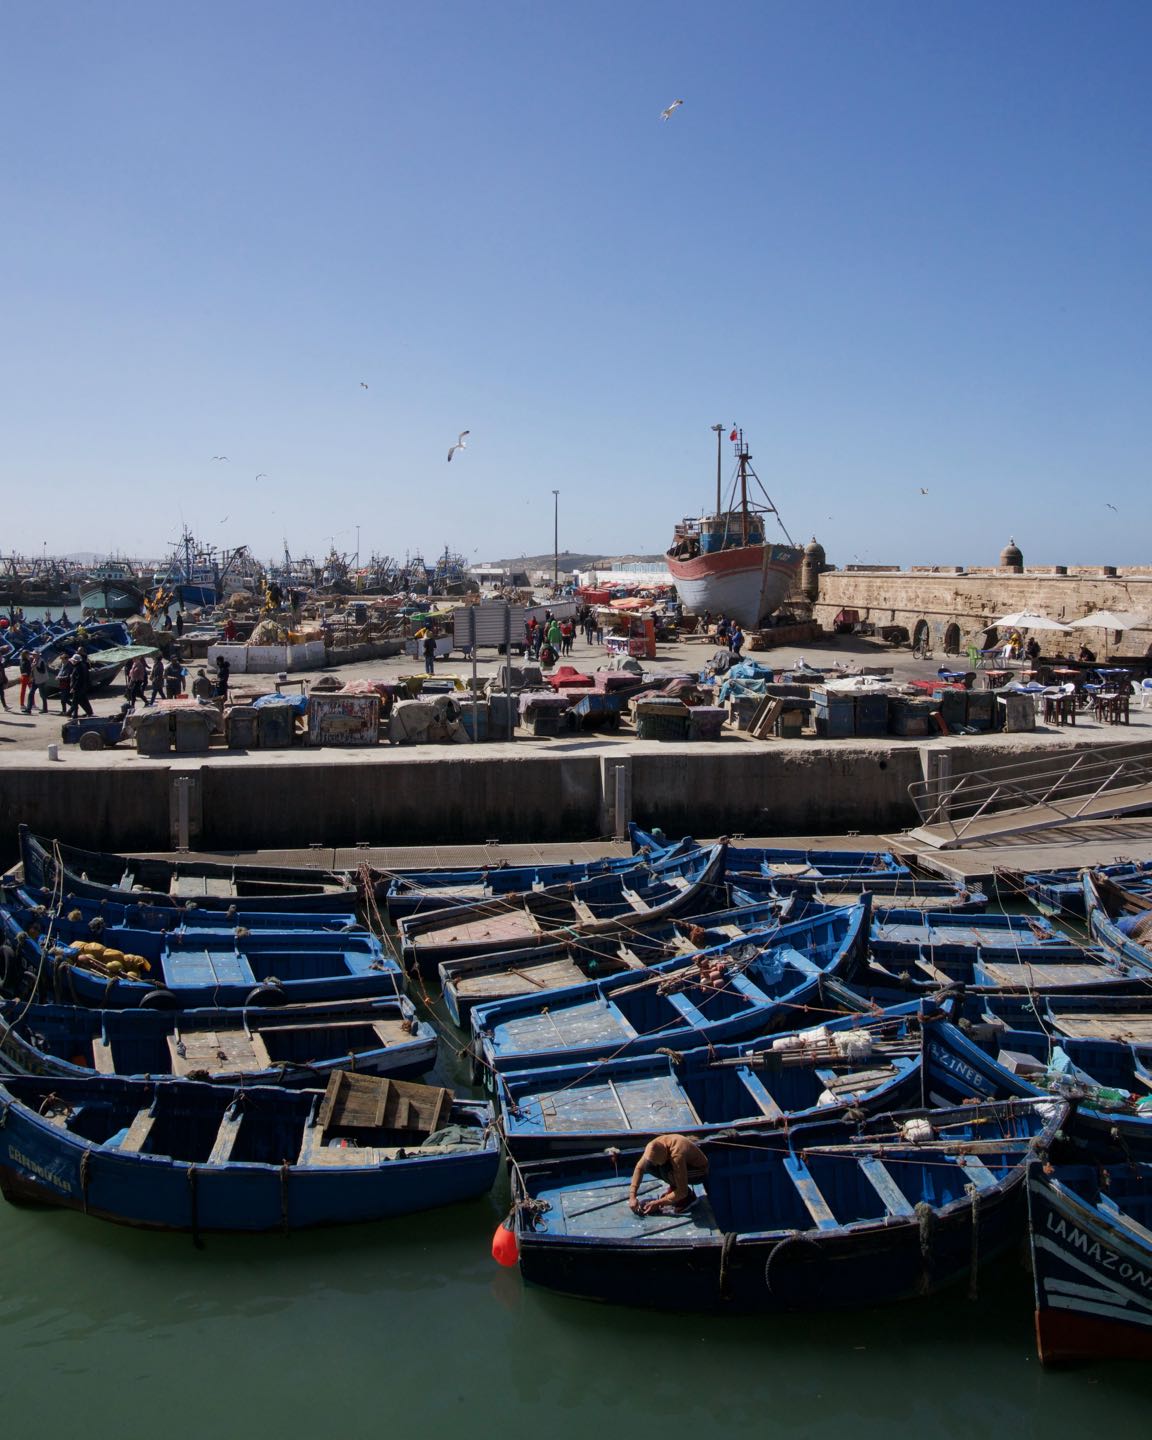 Canoas en el puerto de Essaouira